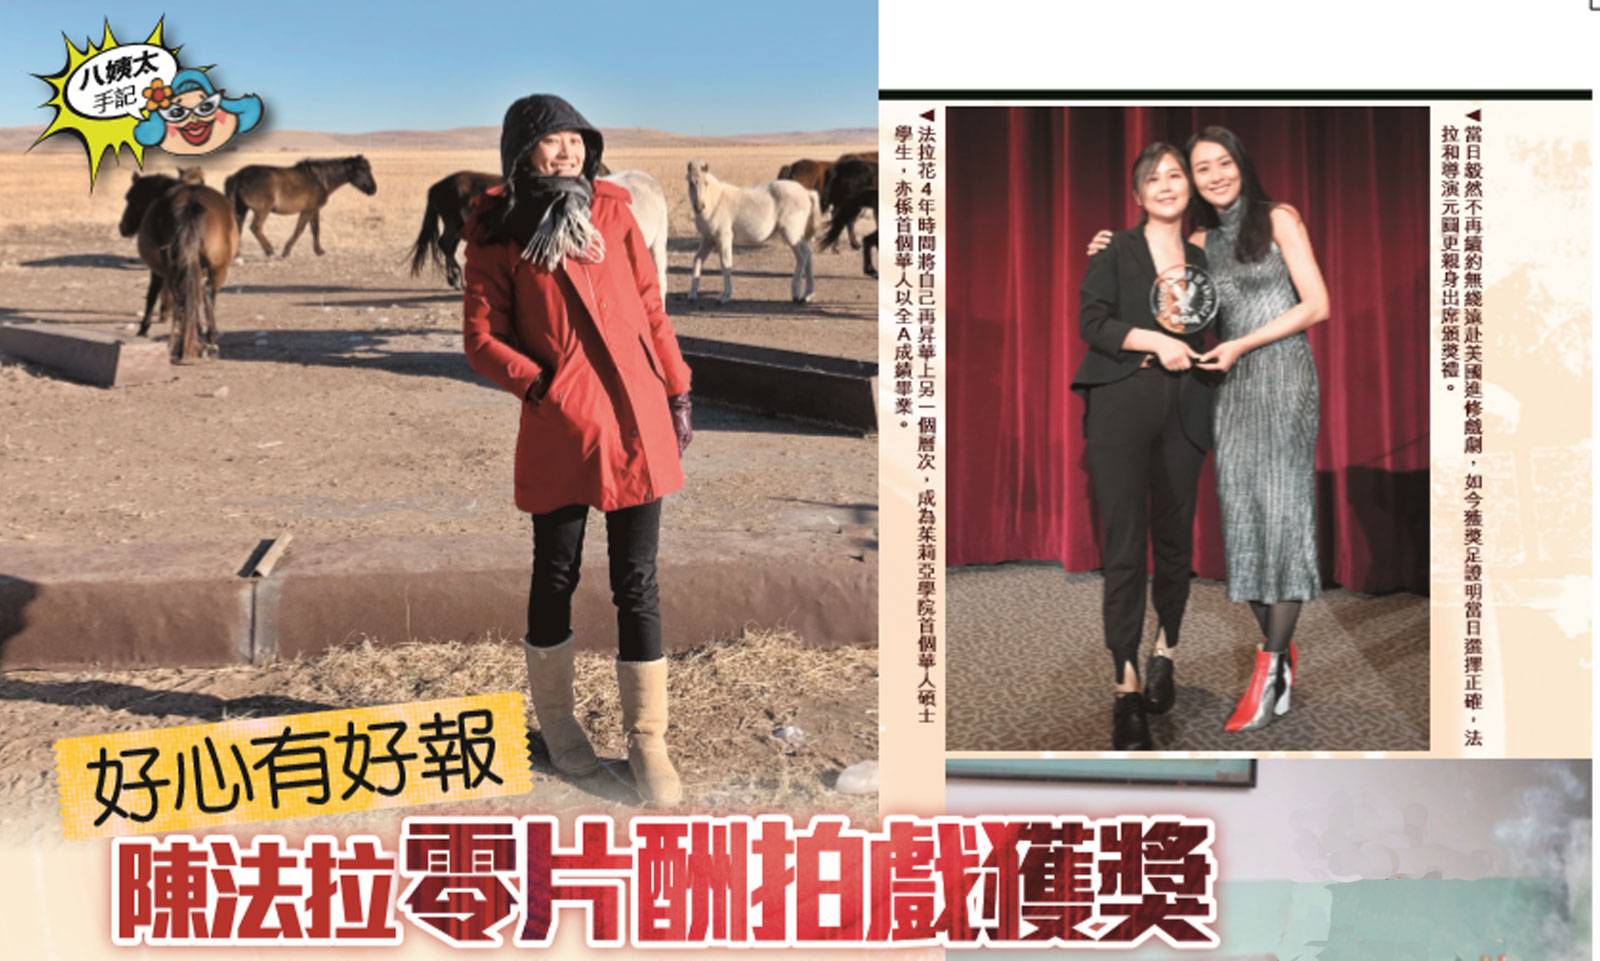 37歲人妻陳法拉零片酬作品獲獎  貼錢拍戲為挑戰自己